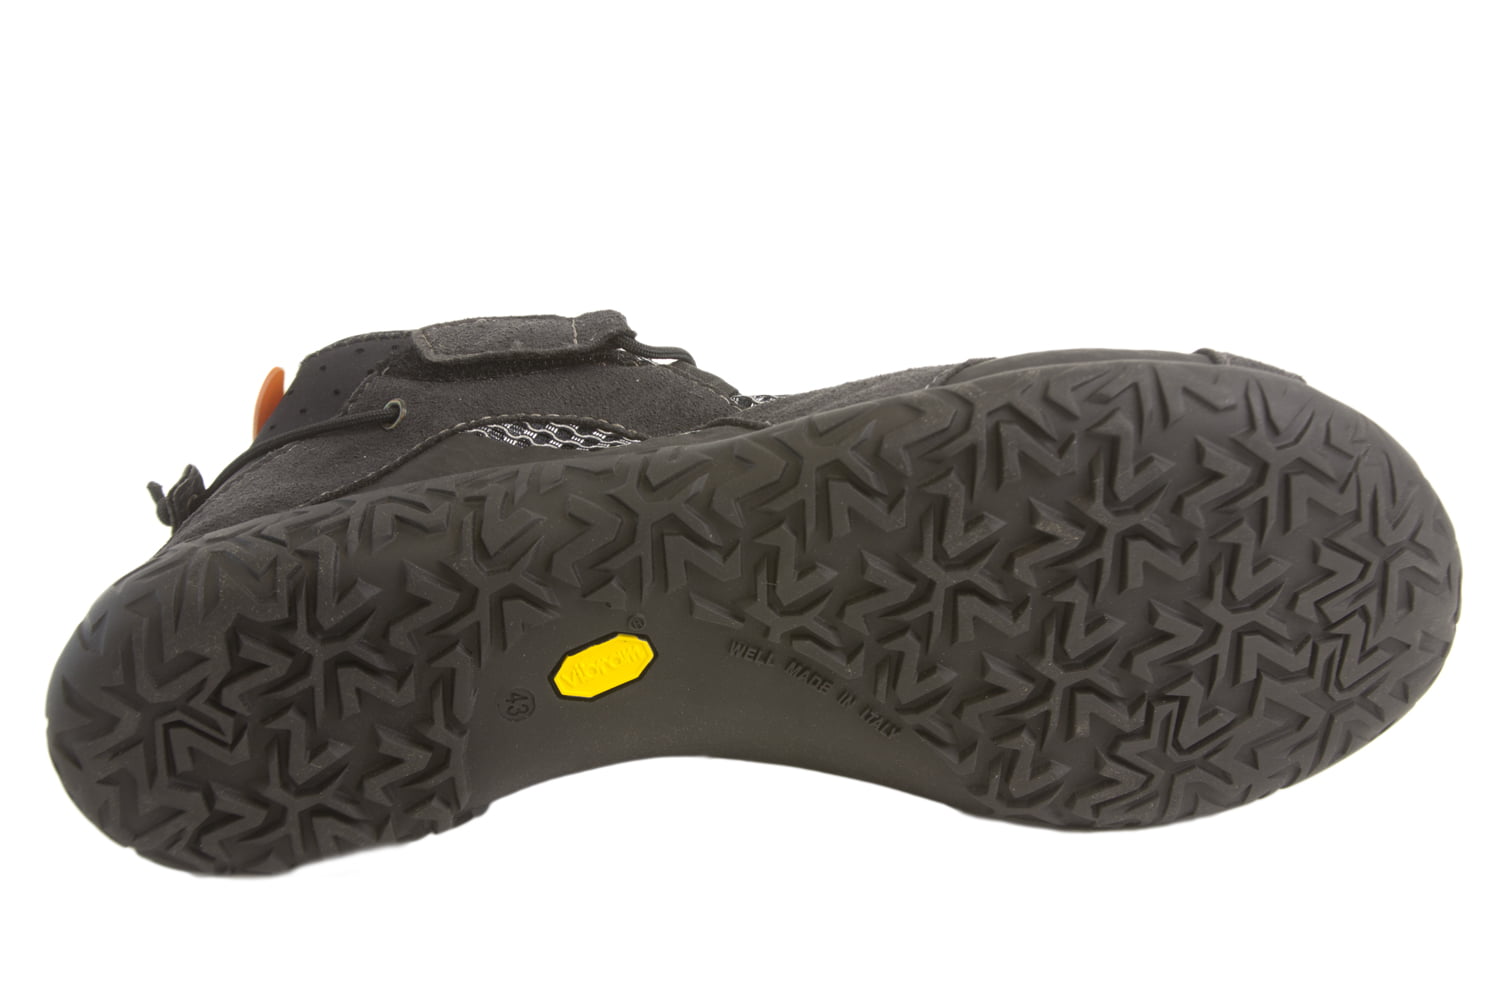 Lizard Footwear Men/'s Kross Amphibious Dark Grey Trail Shoes $109.95 NEW